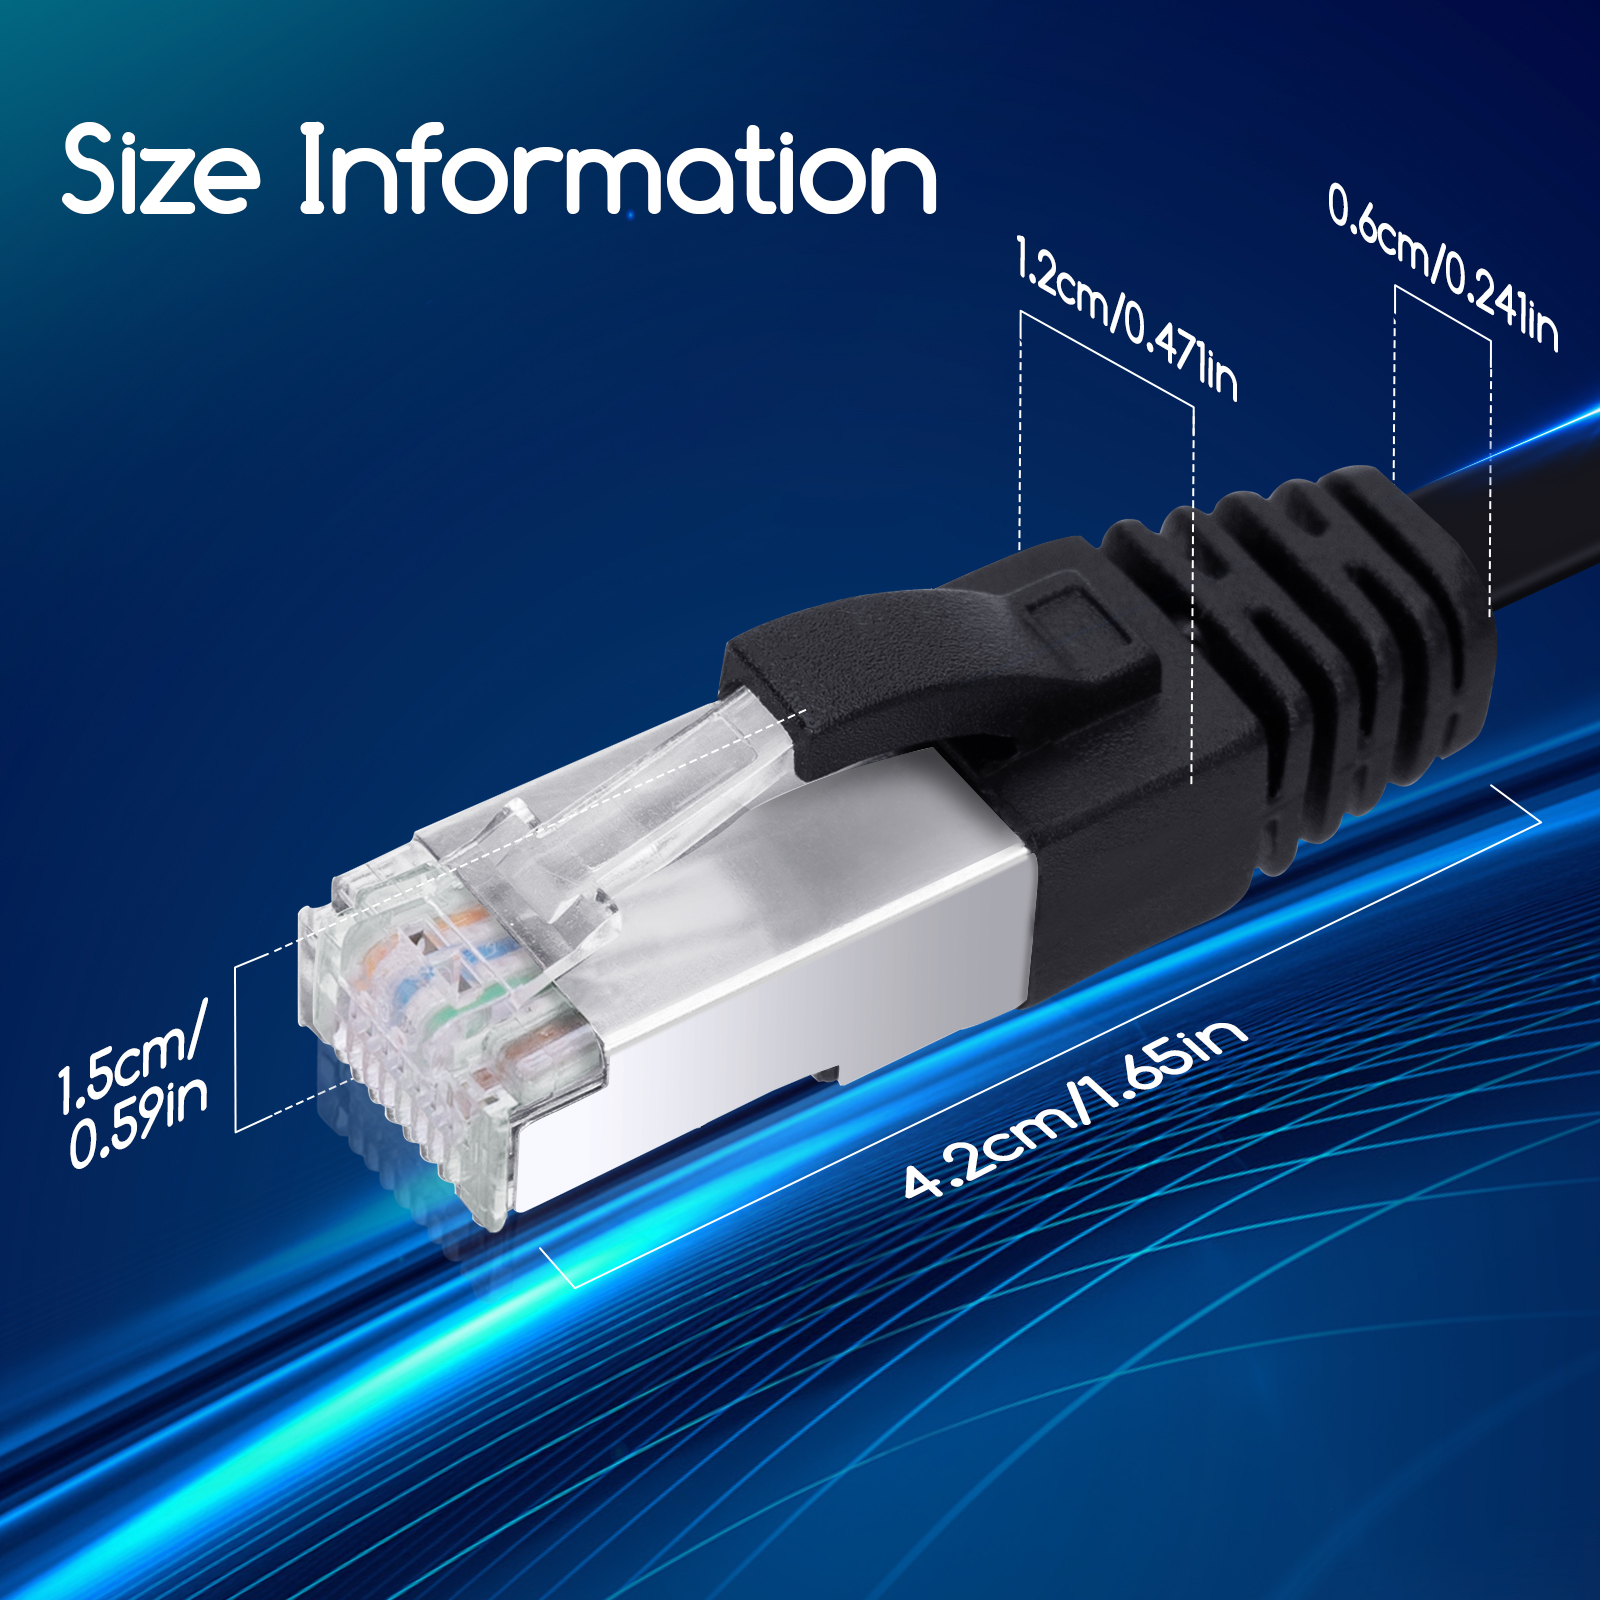 Compatible con Cat.5 Cat.5e Cat.7 5 x 0,5m Cable de Red Gigabit Ethernet LAN Cat.6 RJ45-10 100 1000Mbit s UTP Conmutador Router módem Punto de Acceso Negro CSL Cable de conexión a Red 